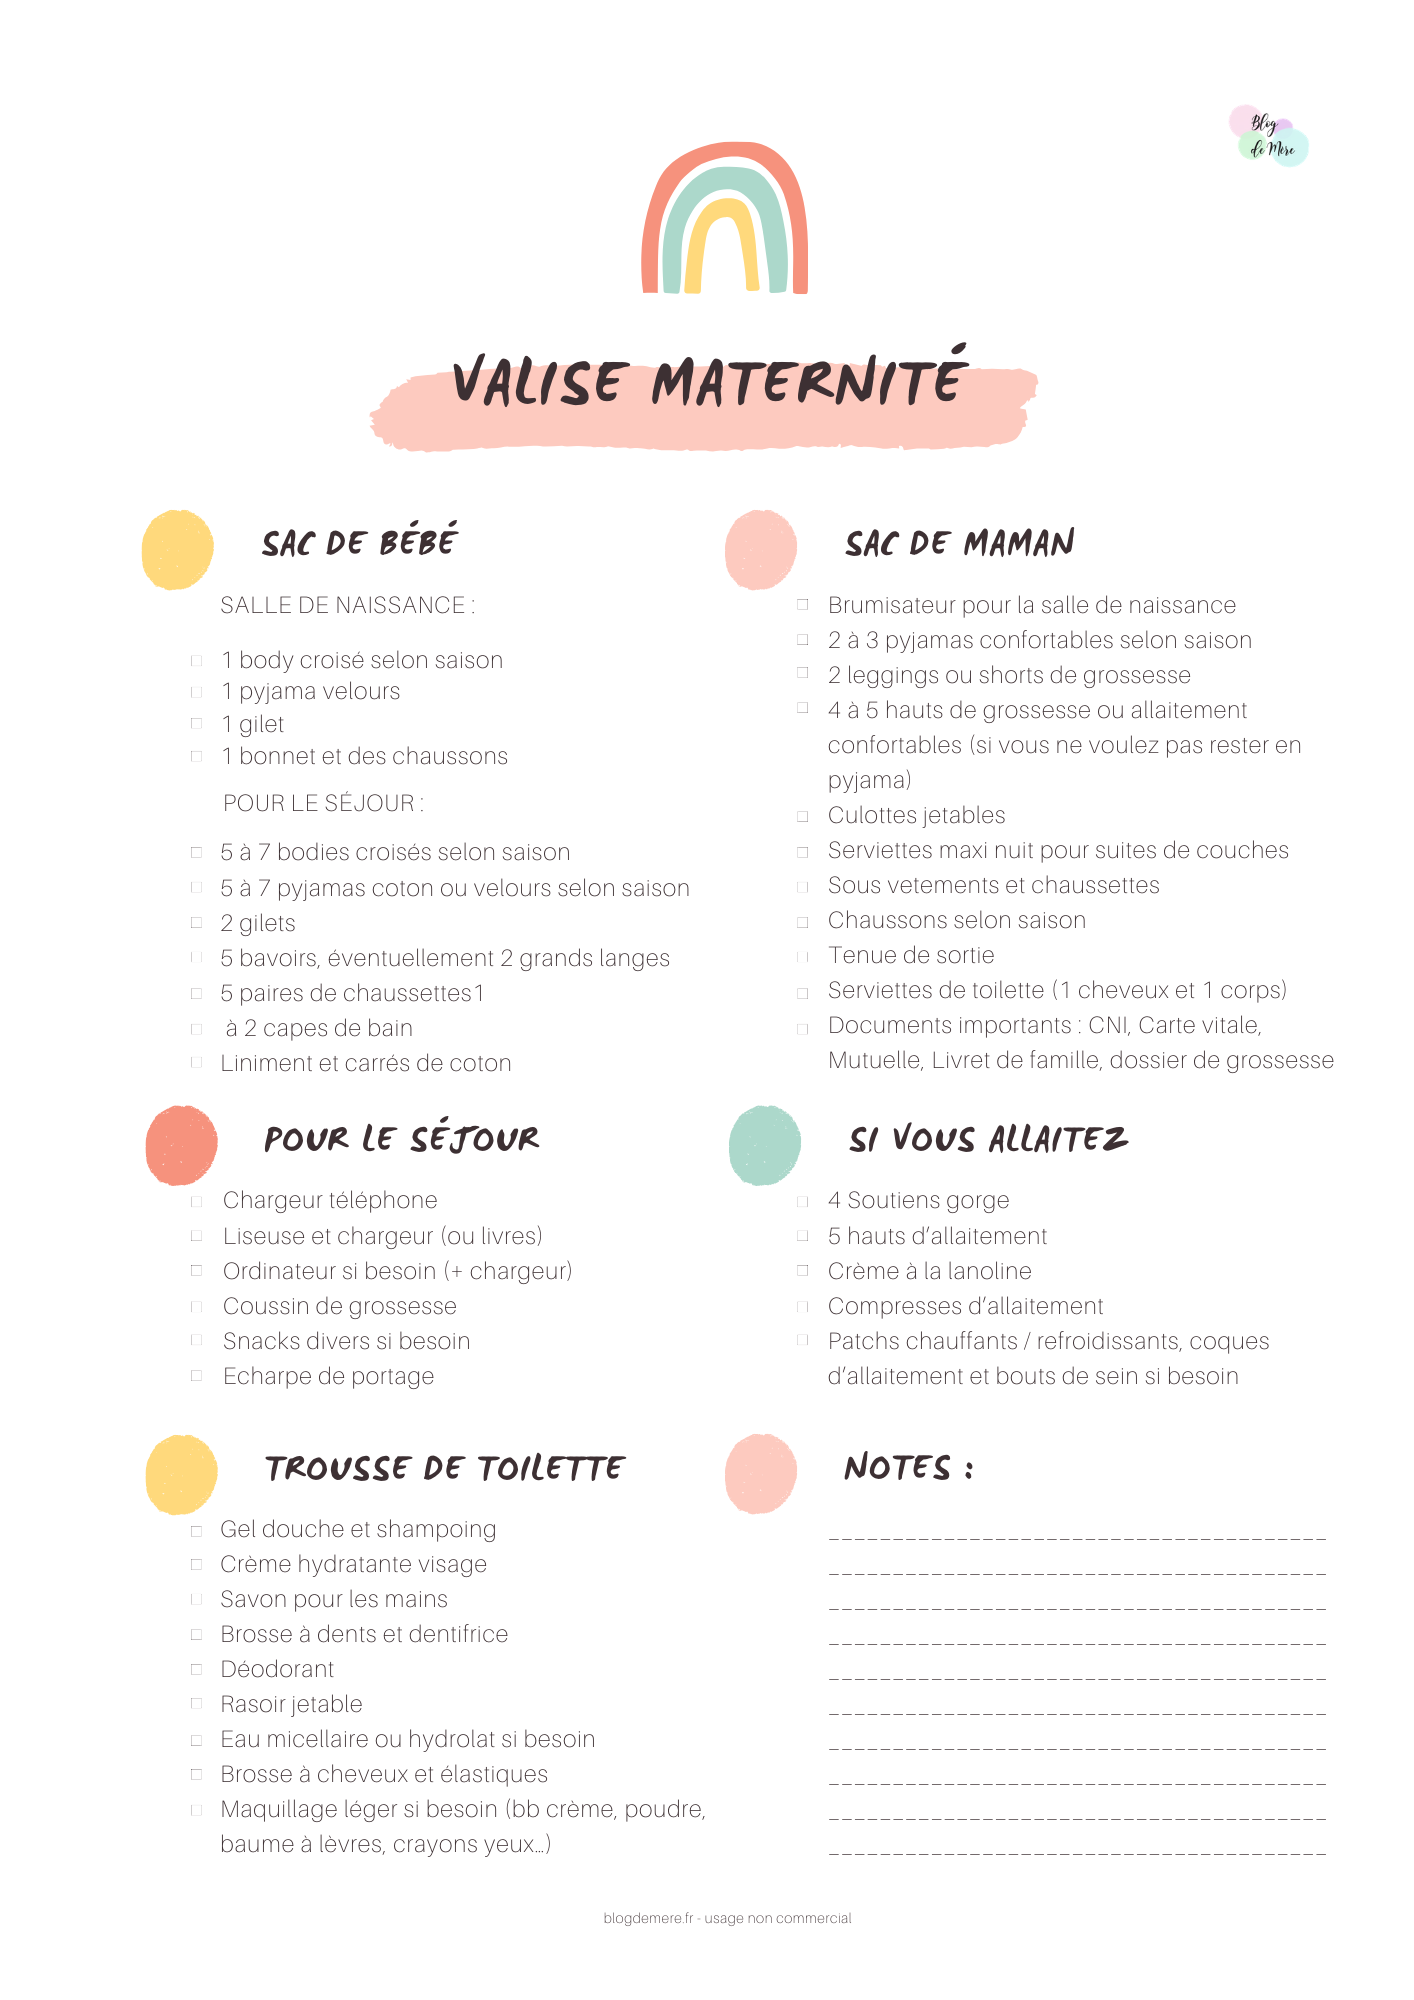 Valise de maternité : une liste pour bien la préparer !